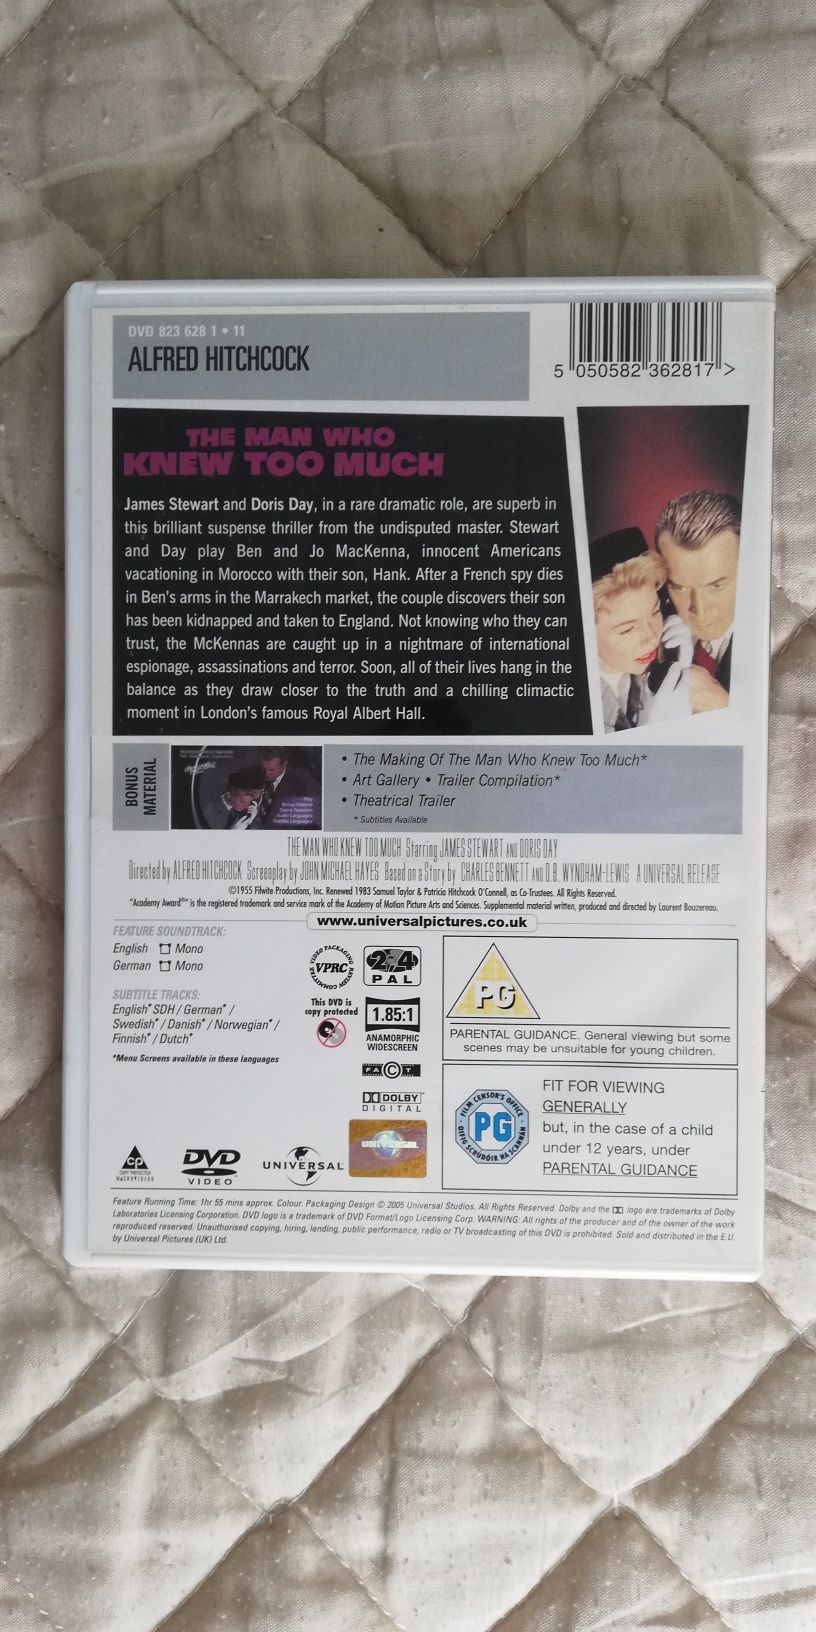 Dvd do filme "The Man Who Knew Too Much", Hitchcock (portes grátis)